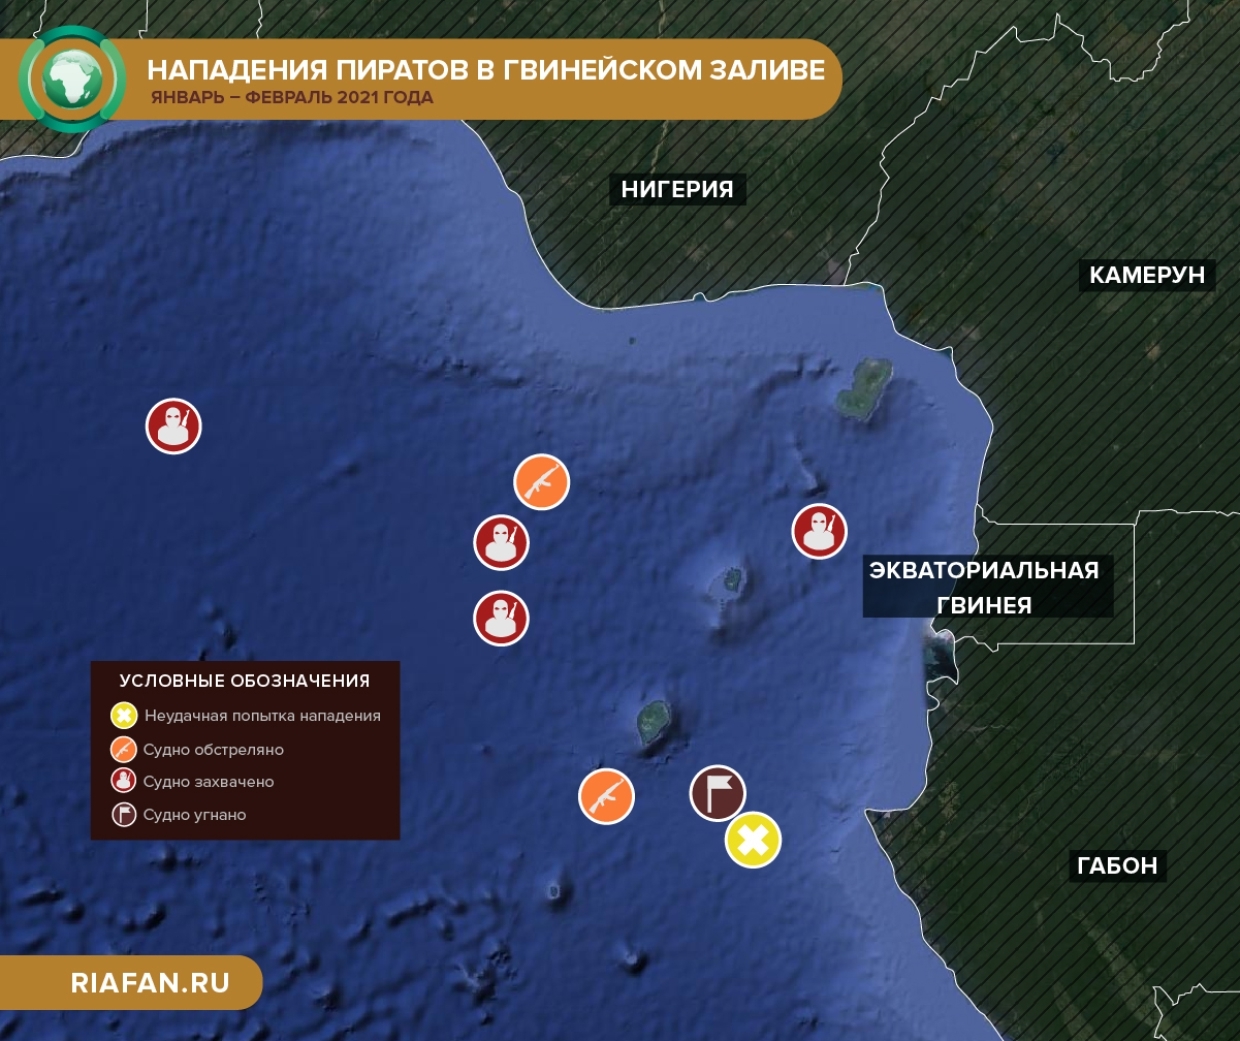 Воды гвинейского залива. Карта пиратских нападений в Гвинейском заливе. Карта пиратских нападений. Гвинейский залив пираты. Карта нападения пиратов.